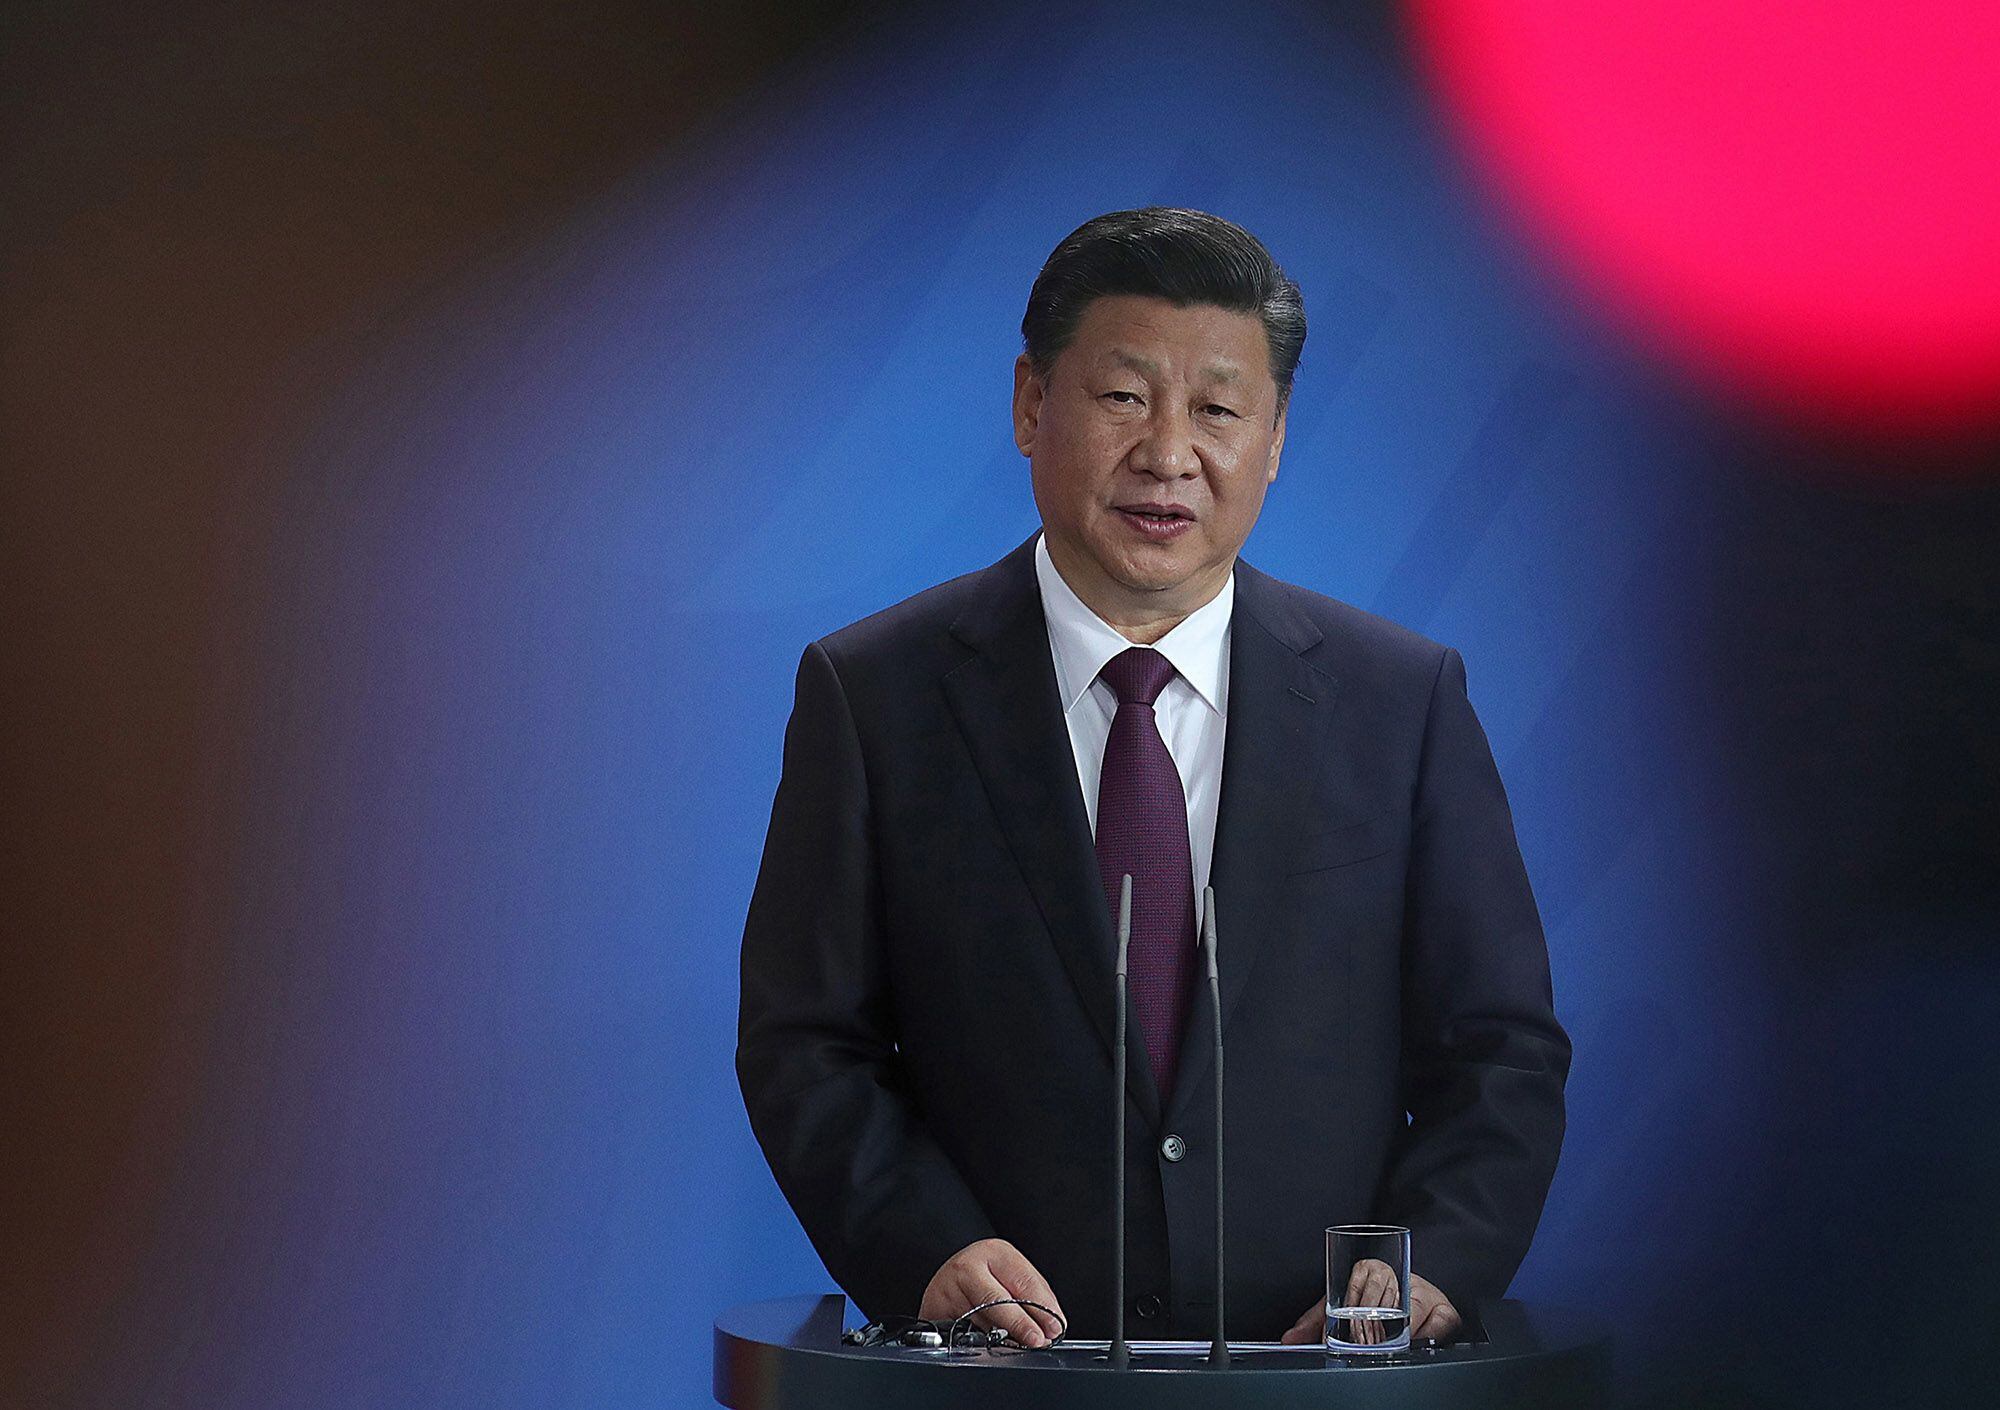 China ‘mete su cuchara’ en conflicto Rusia-Ucrania; Moscú tiene ‘preocupaciones razonables’